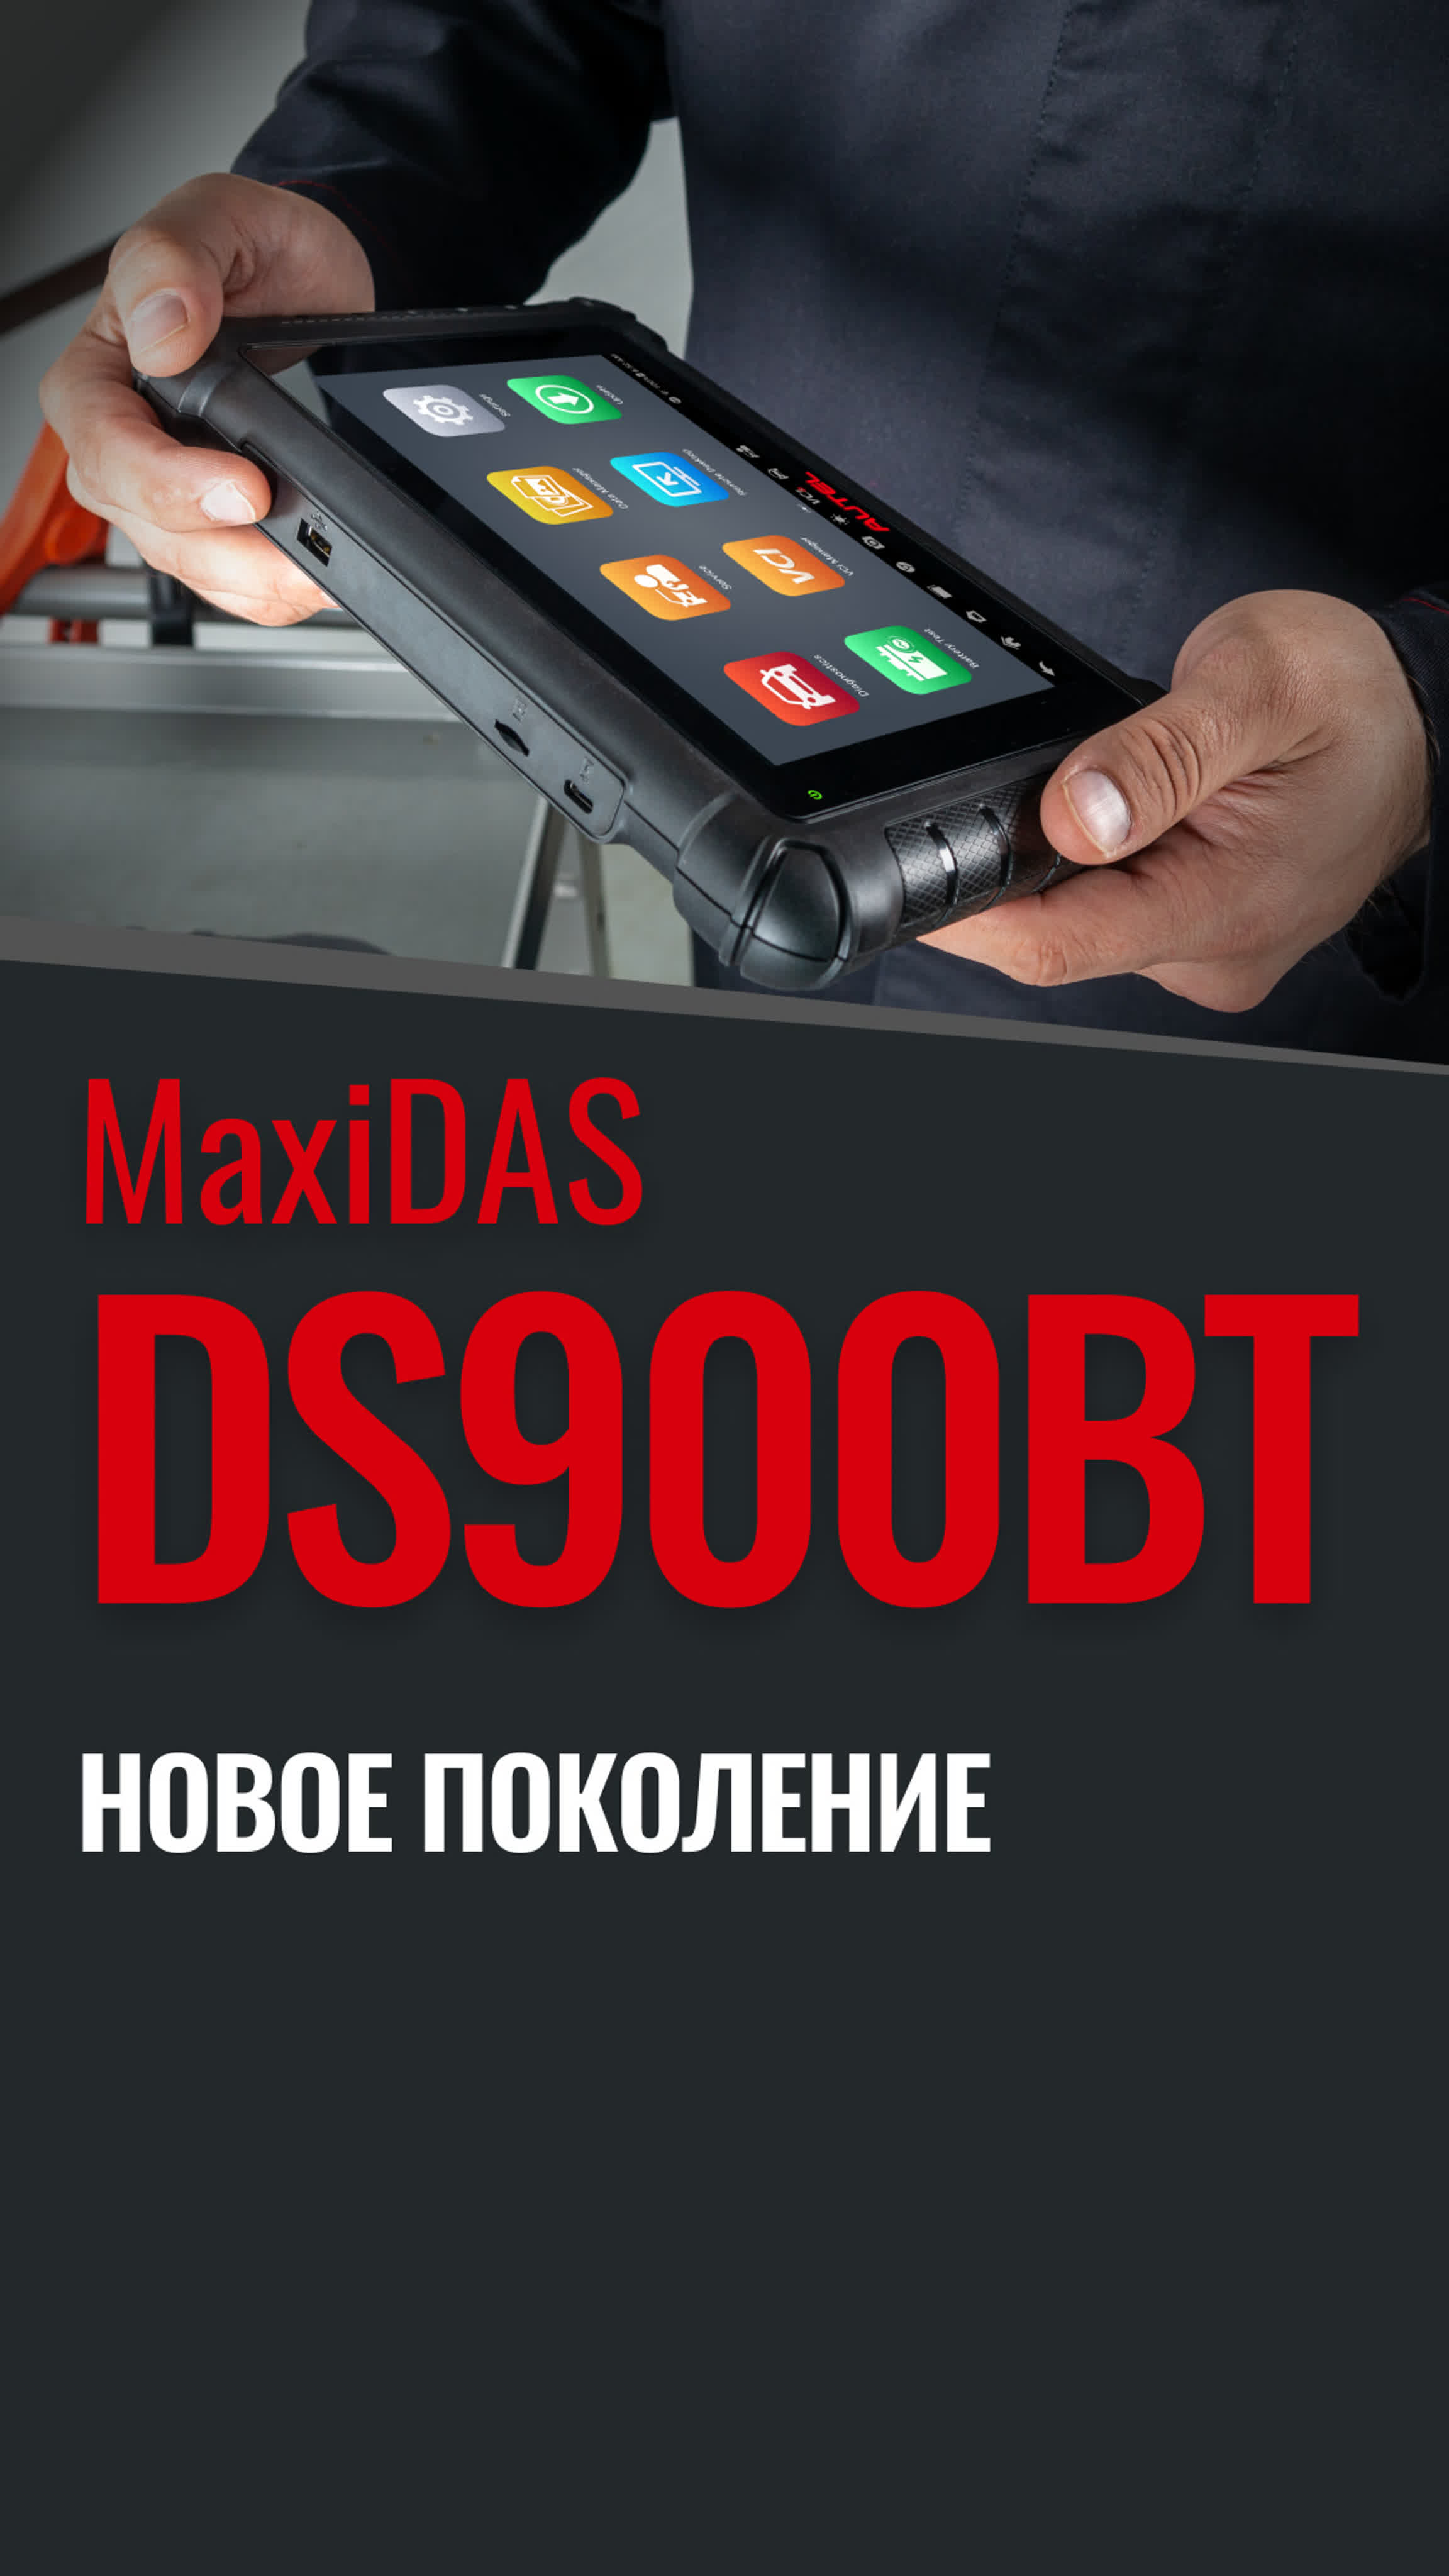 Autel MaxiDAS DS900BT Diagnostics Tool